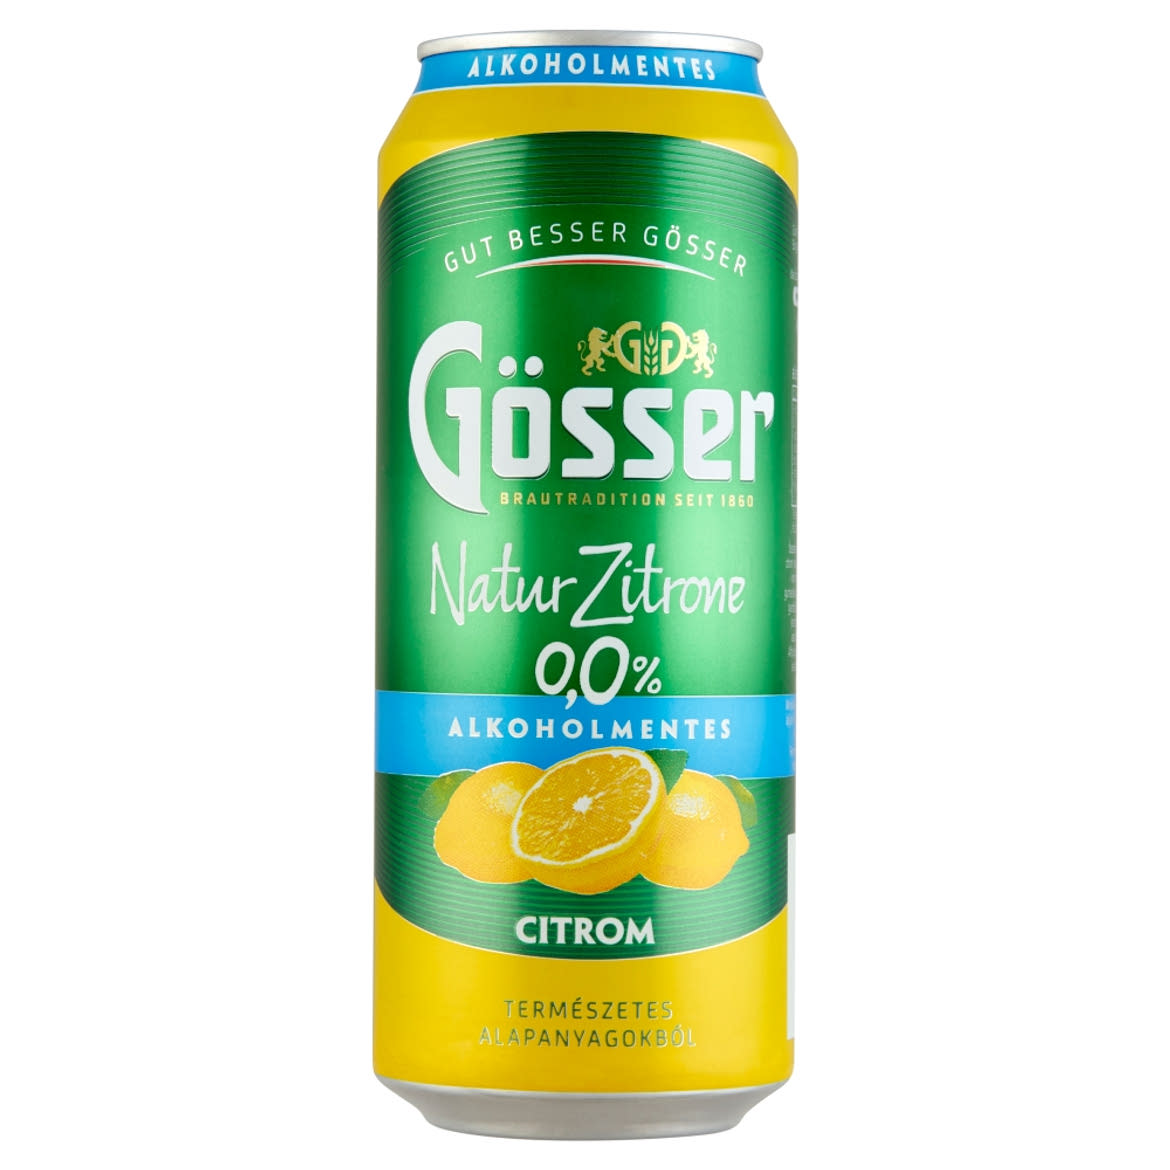 Gösser Natur Zitrone citromos alkoholmentes sörital 0%